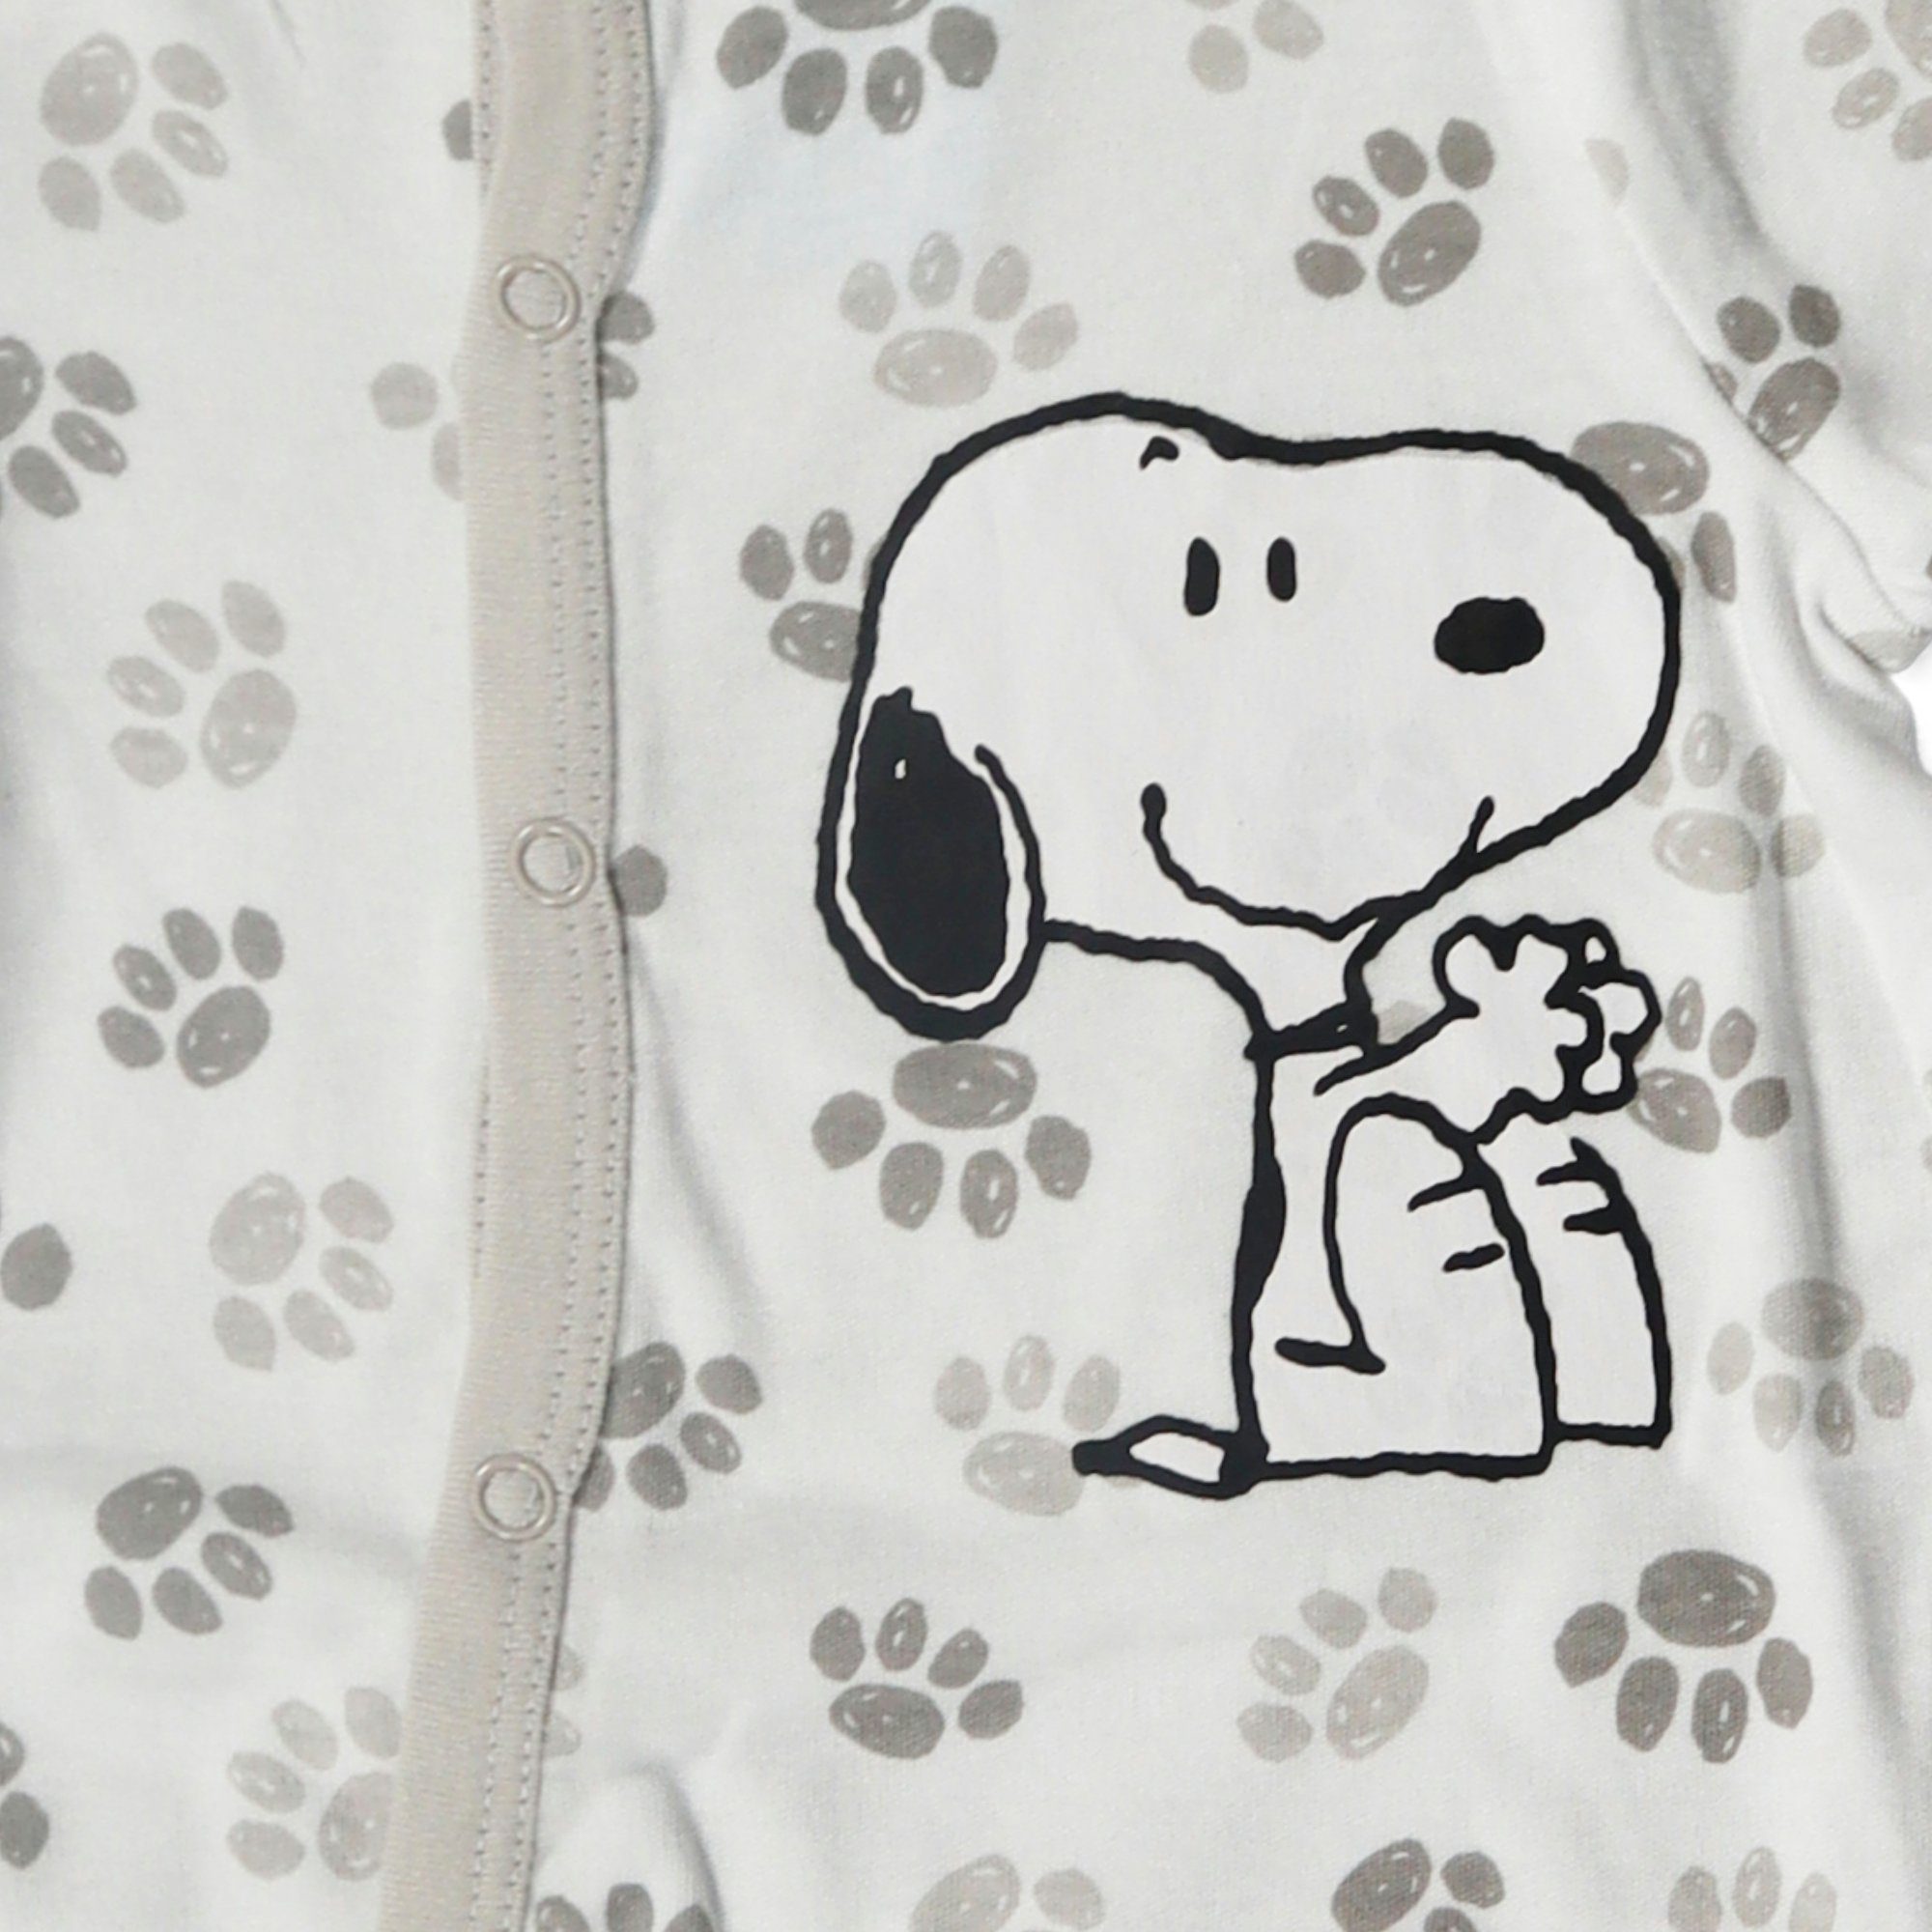 Snoopy Strampler Snoopy Sleep 62 langarm Gr. Strampler 100% Kleinkind bis baumwolle Einteiler Baby 92